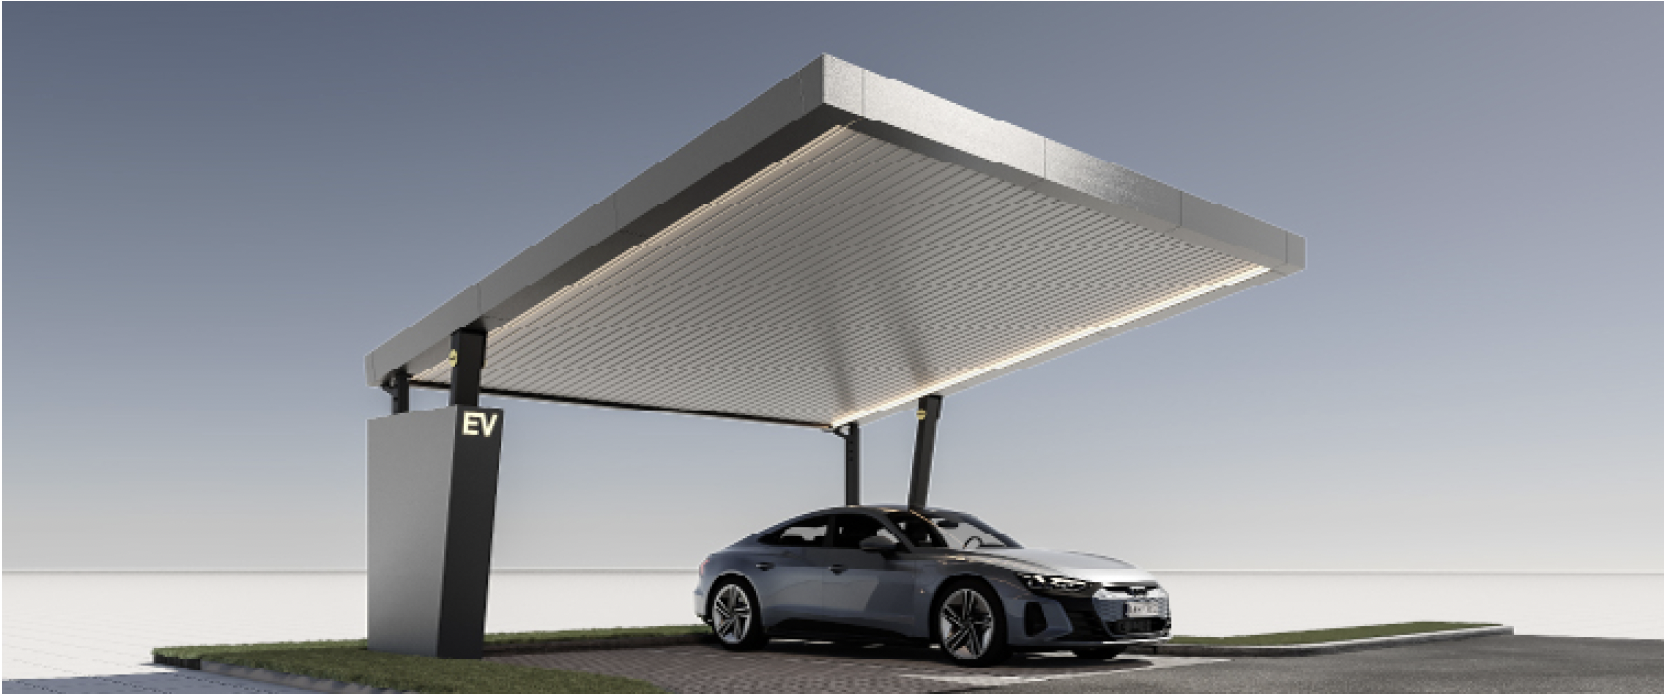 Moderner Solar-Carport mit integrierten Photovoltaikmodulen und Elektroauto-Ladestation